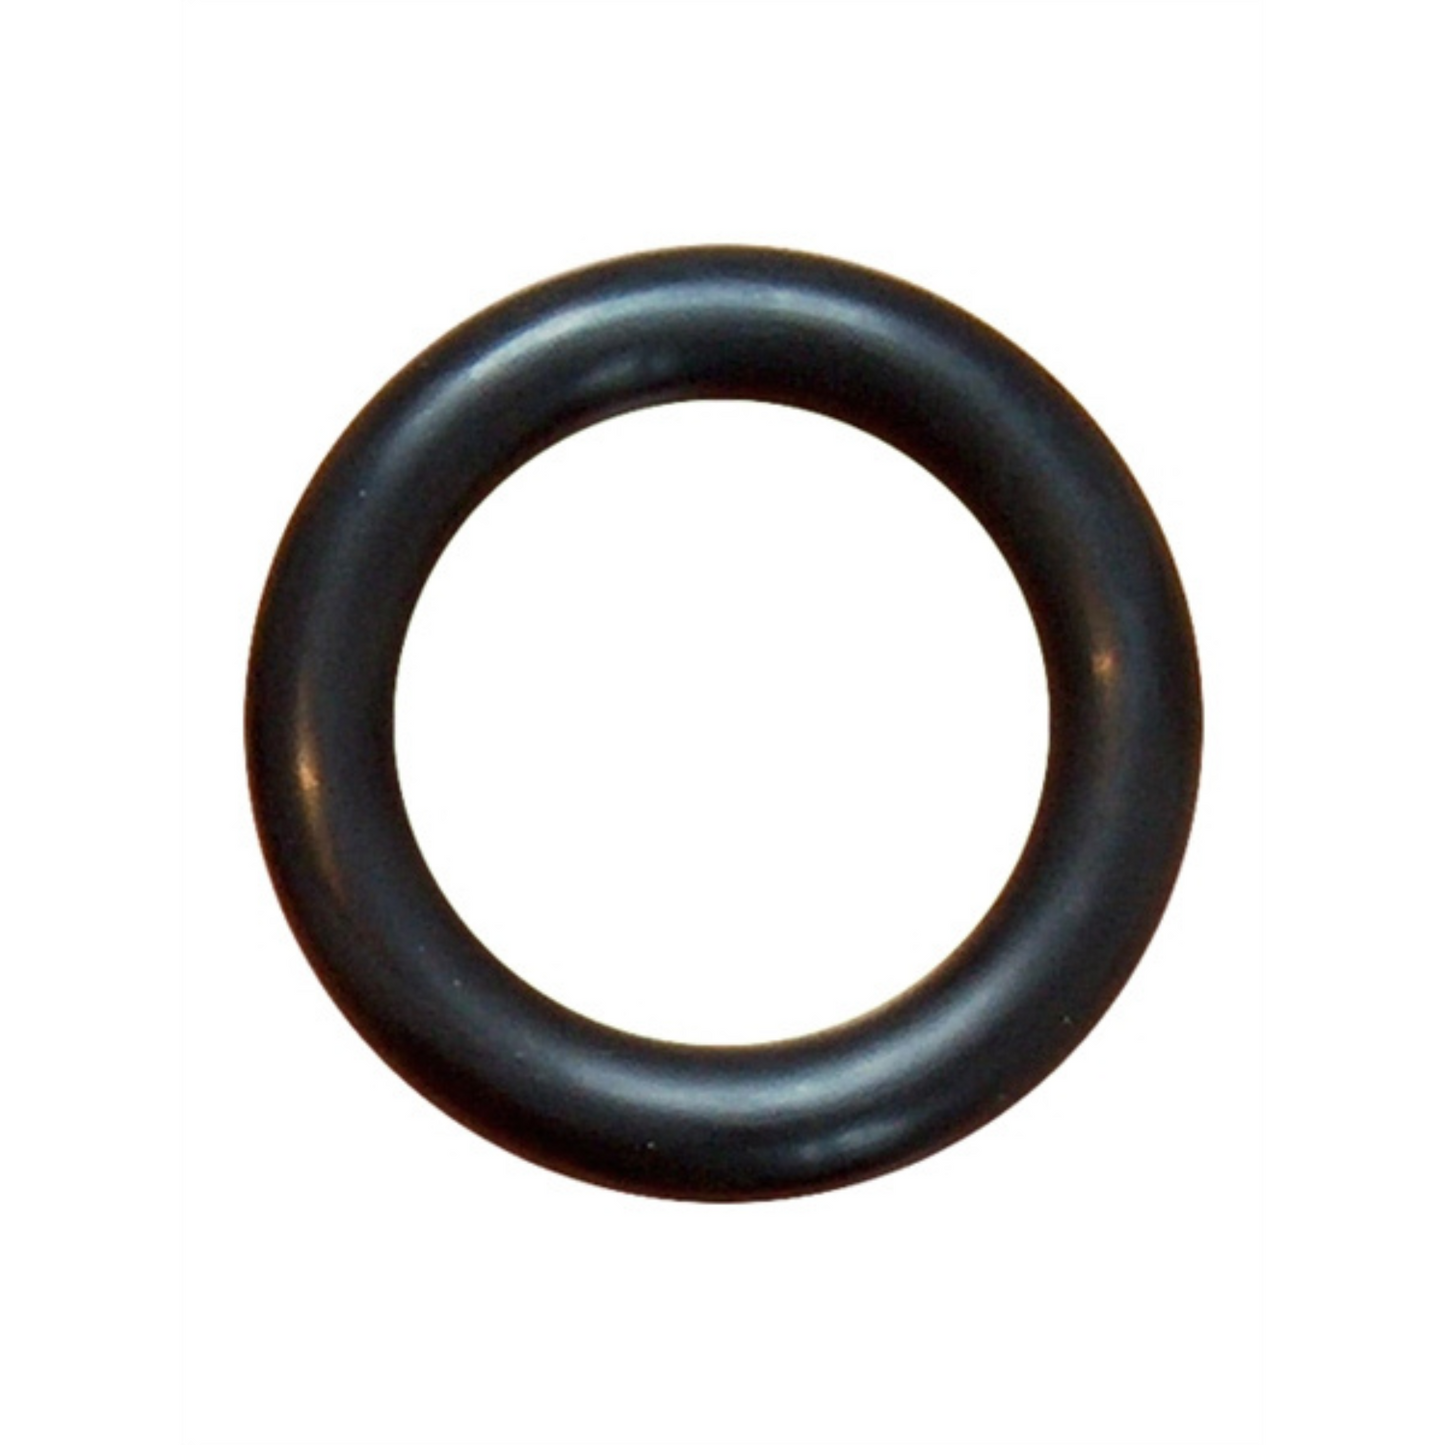 Deze dikke zwarte cock ring met een diameter van 40 mm, van Mister B en te koop bij Flavourez.